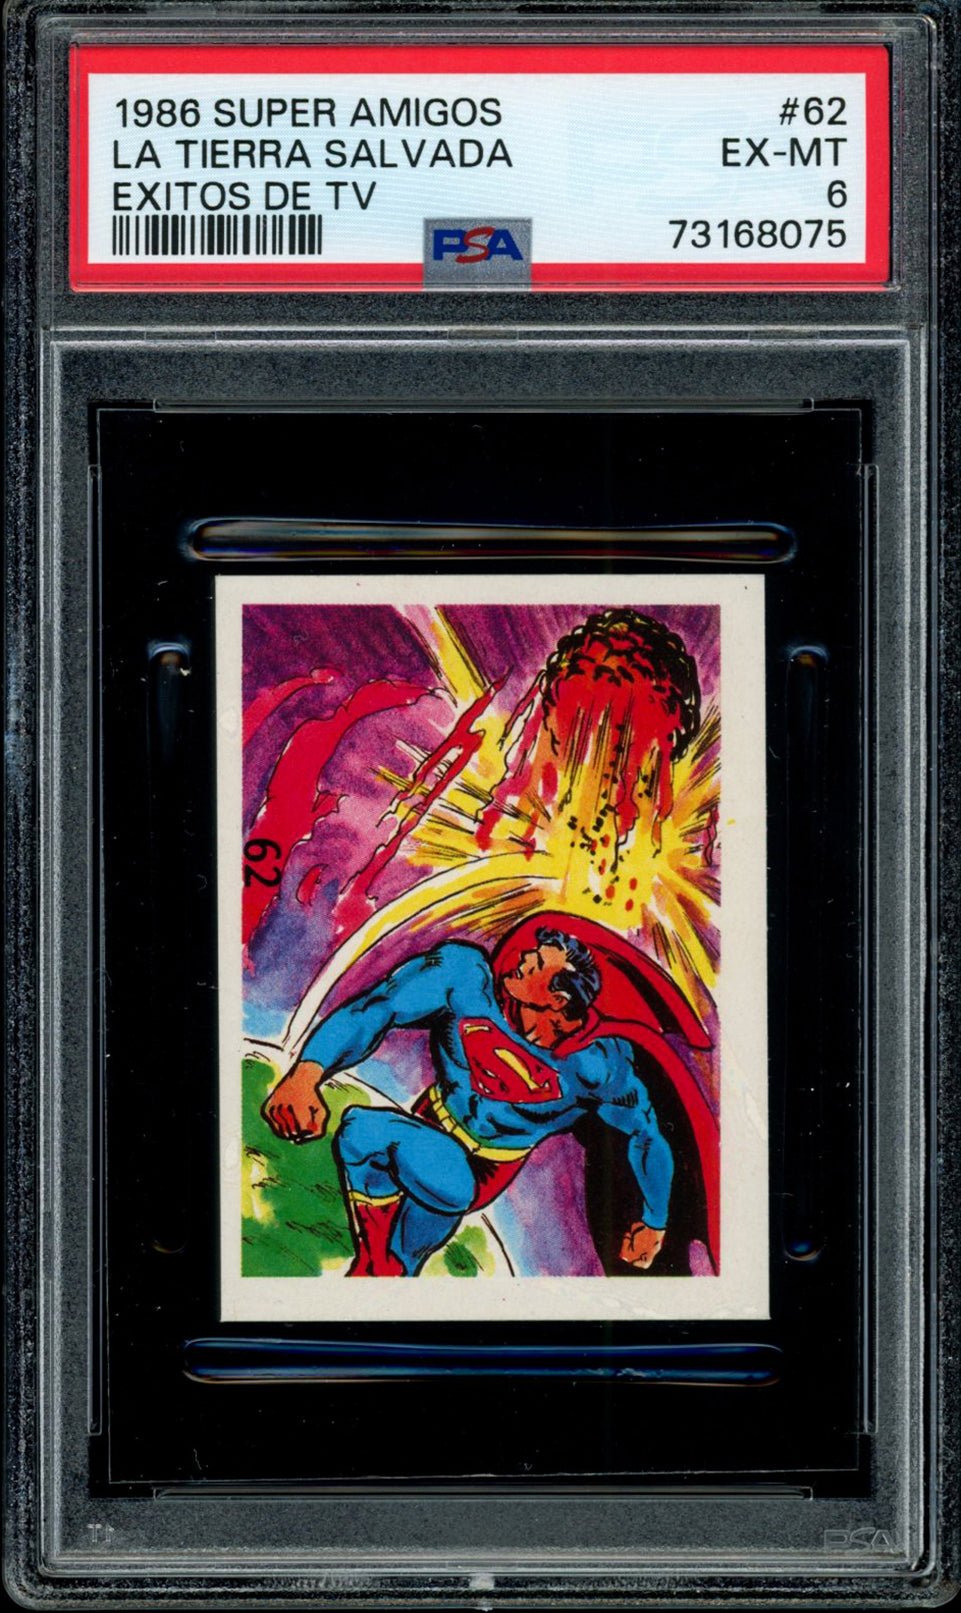 SUPERMAN PSA 6 1986 Reyauca Super Amigos Exitos de TV #62 C2 DC Comics Base Graded Cards - Hobby Gems